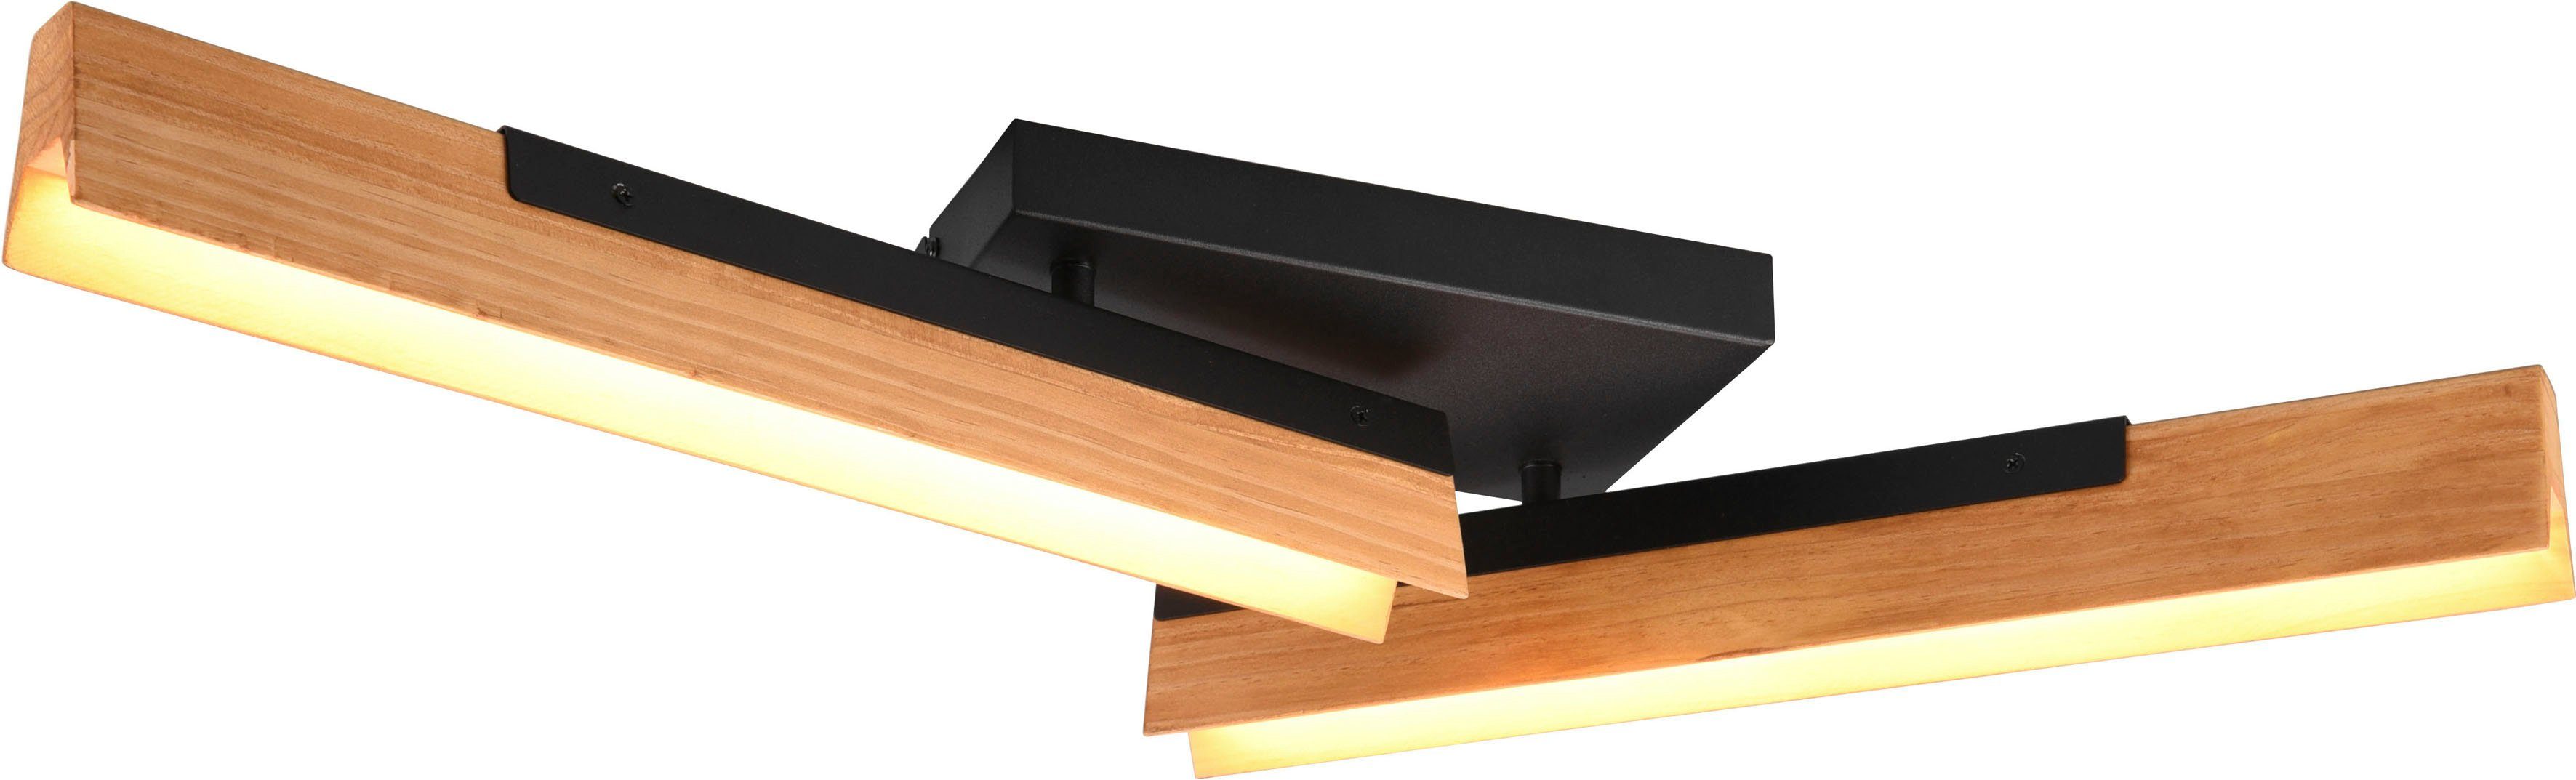 LED 3 Holz LED + Dimmfunktion, Deckenlampe TRIO integriert, warmweiß Leuchten fest LED Kerala, Metall, Deckenleuchte aus Dimmstufen, schwenkbar, mehrere Helligkeitsstufen, Warmweiß,